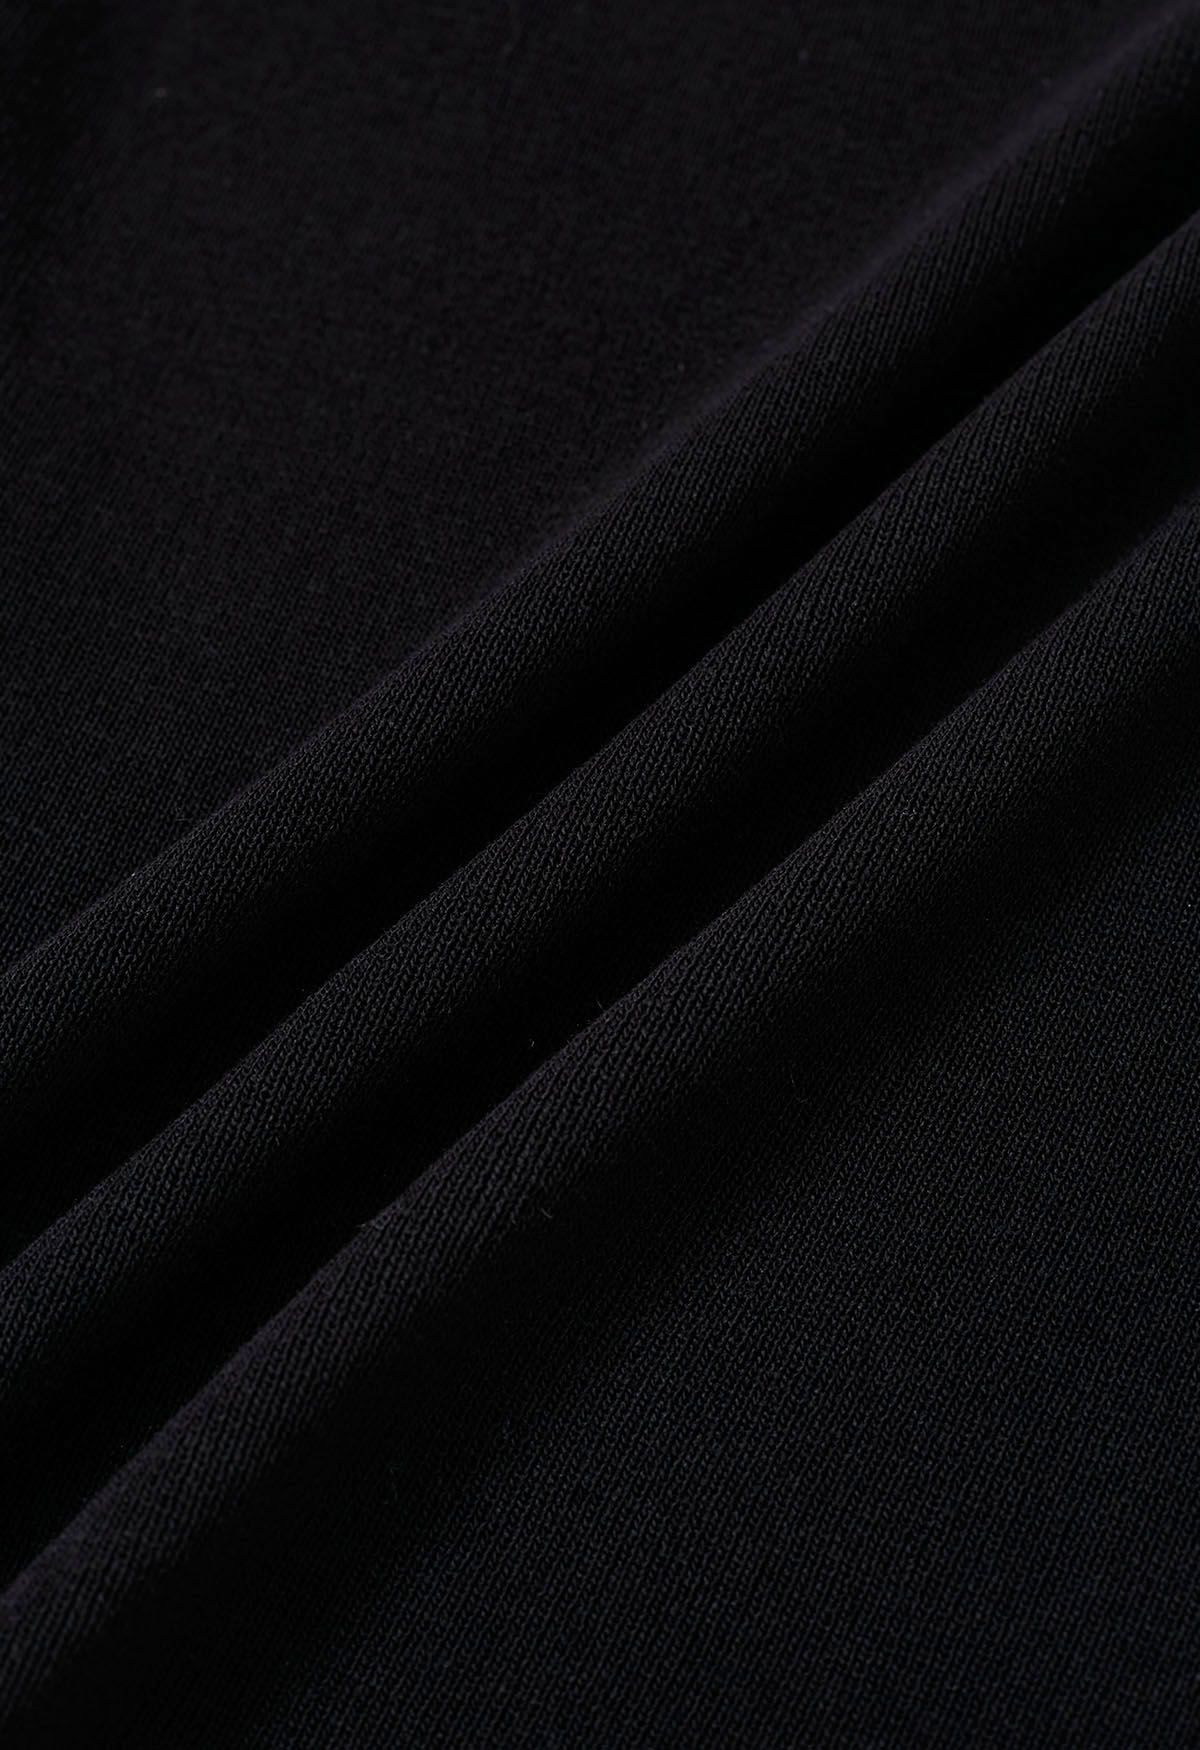 Solid Split Strap Knit Tank Top in Black